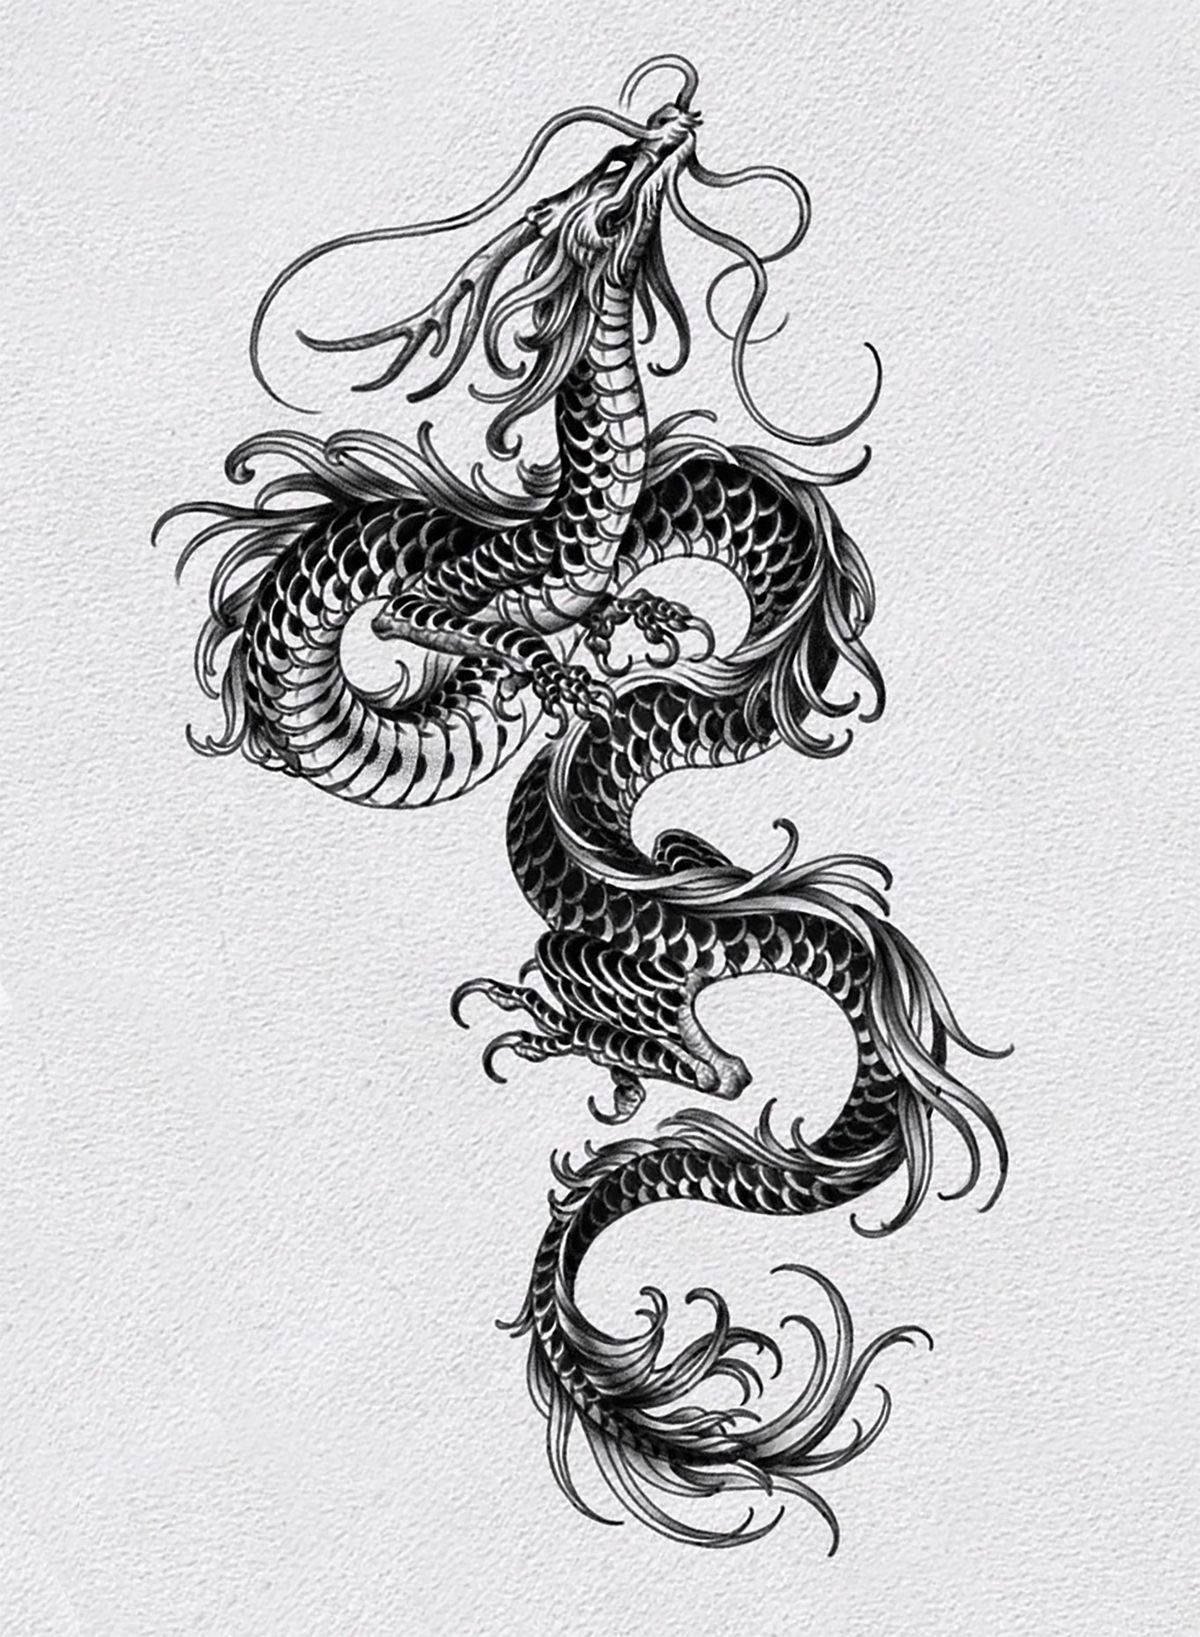 Papelde Parede De Tatuagem De Dragão Japonês Extraordinário. Papel de Parede